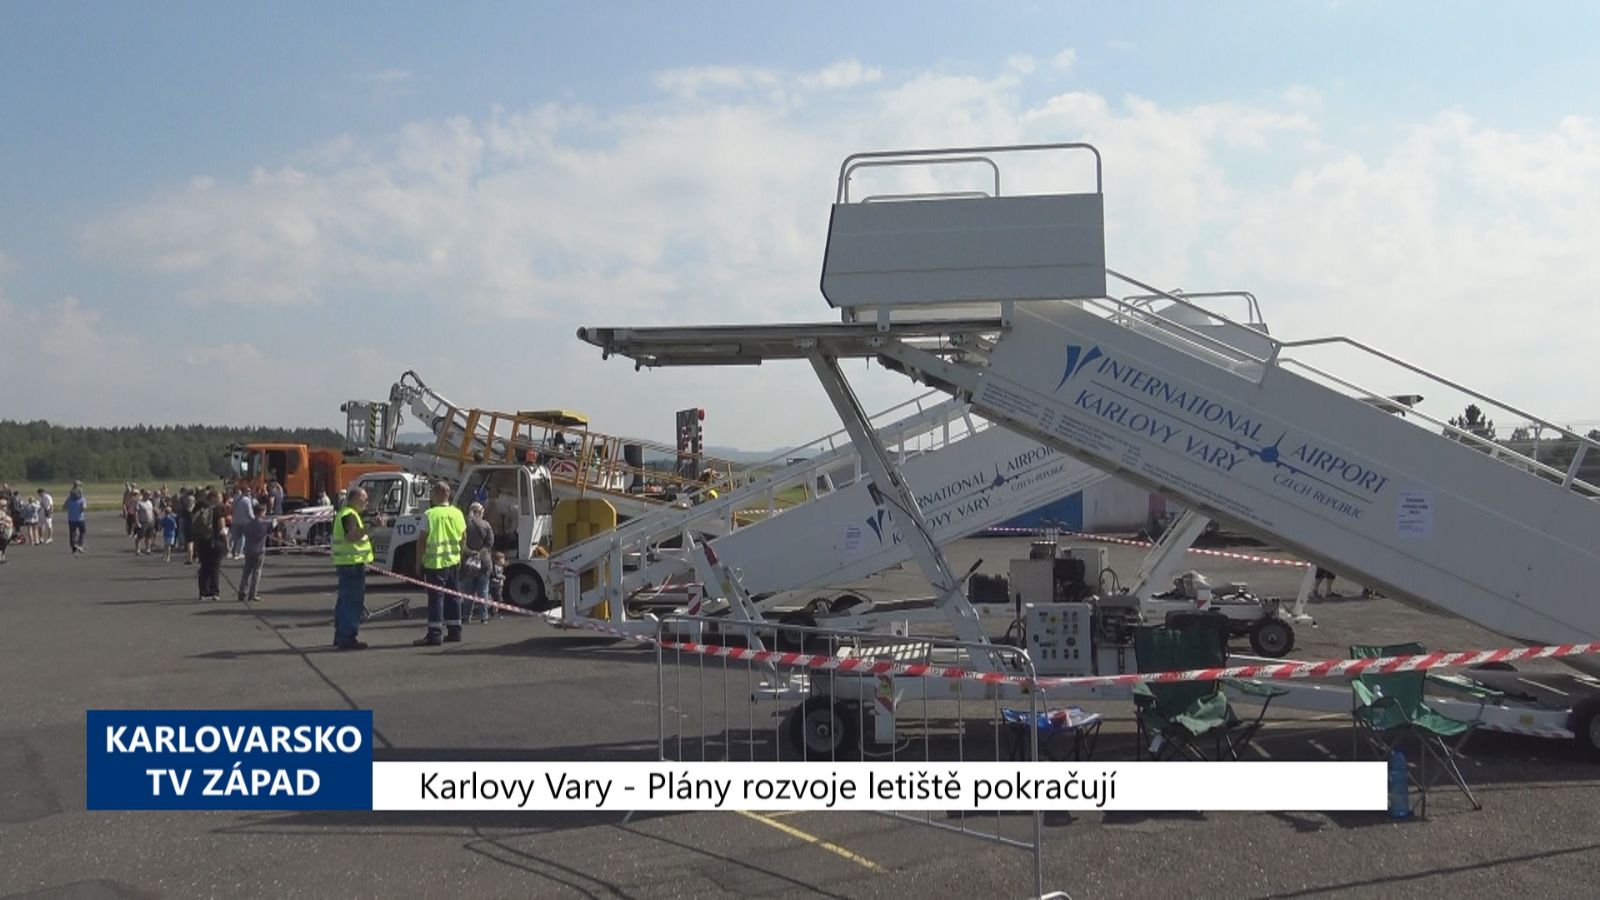 Karlovy Vary: Plány rozvoje letiště pokračují (TV Západ)